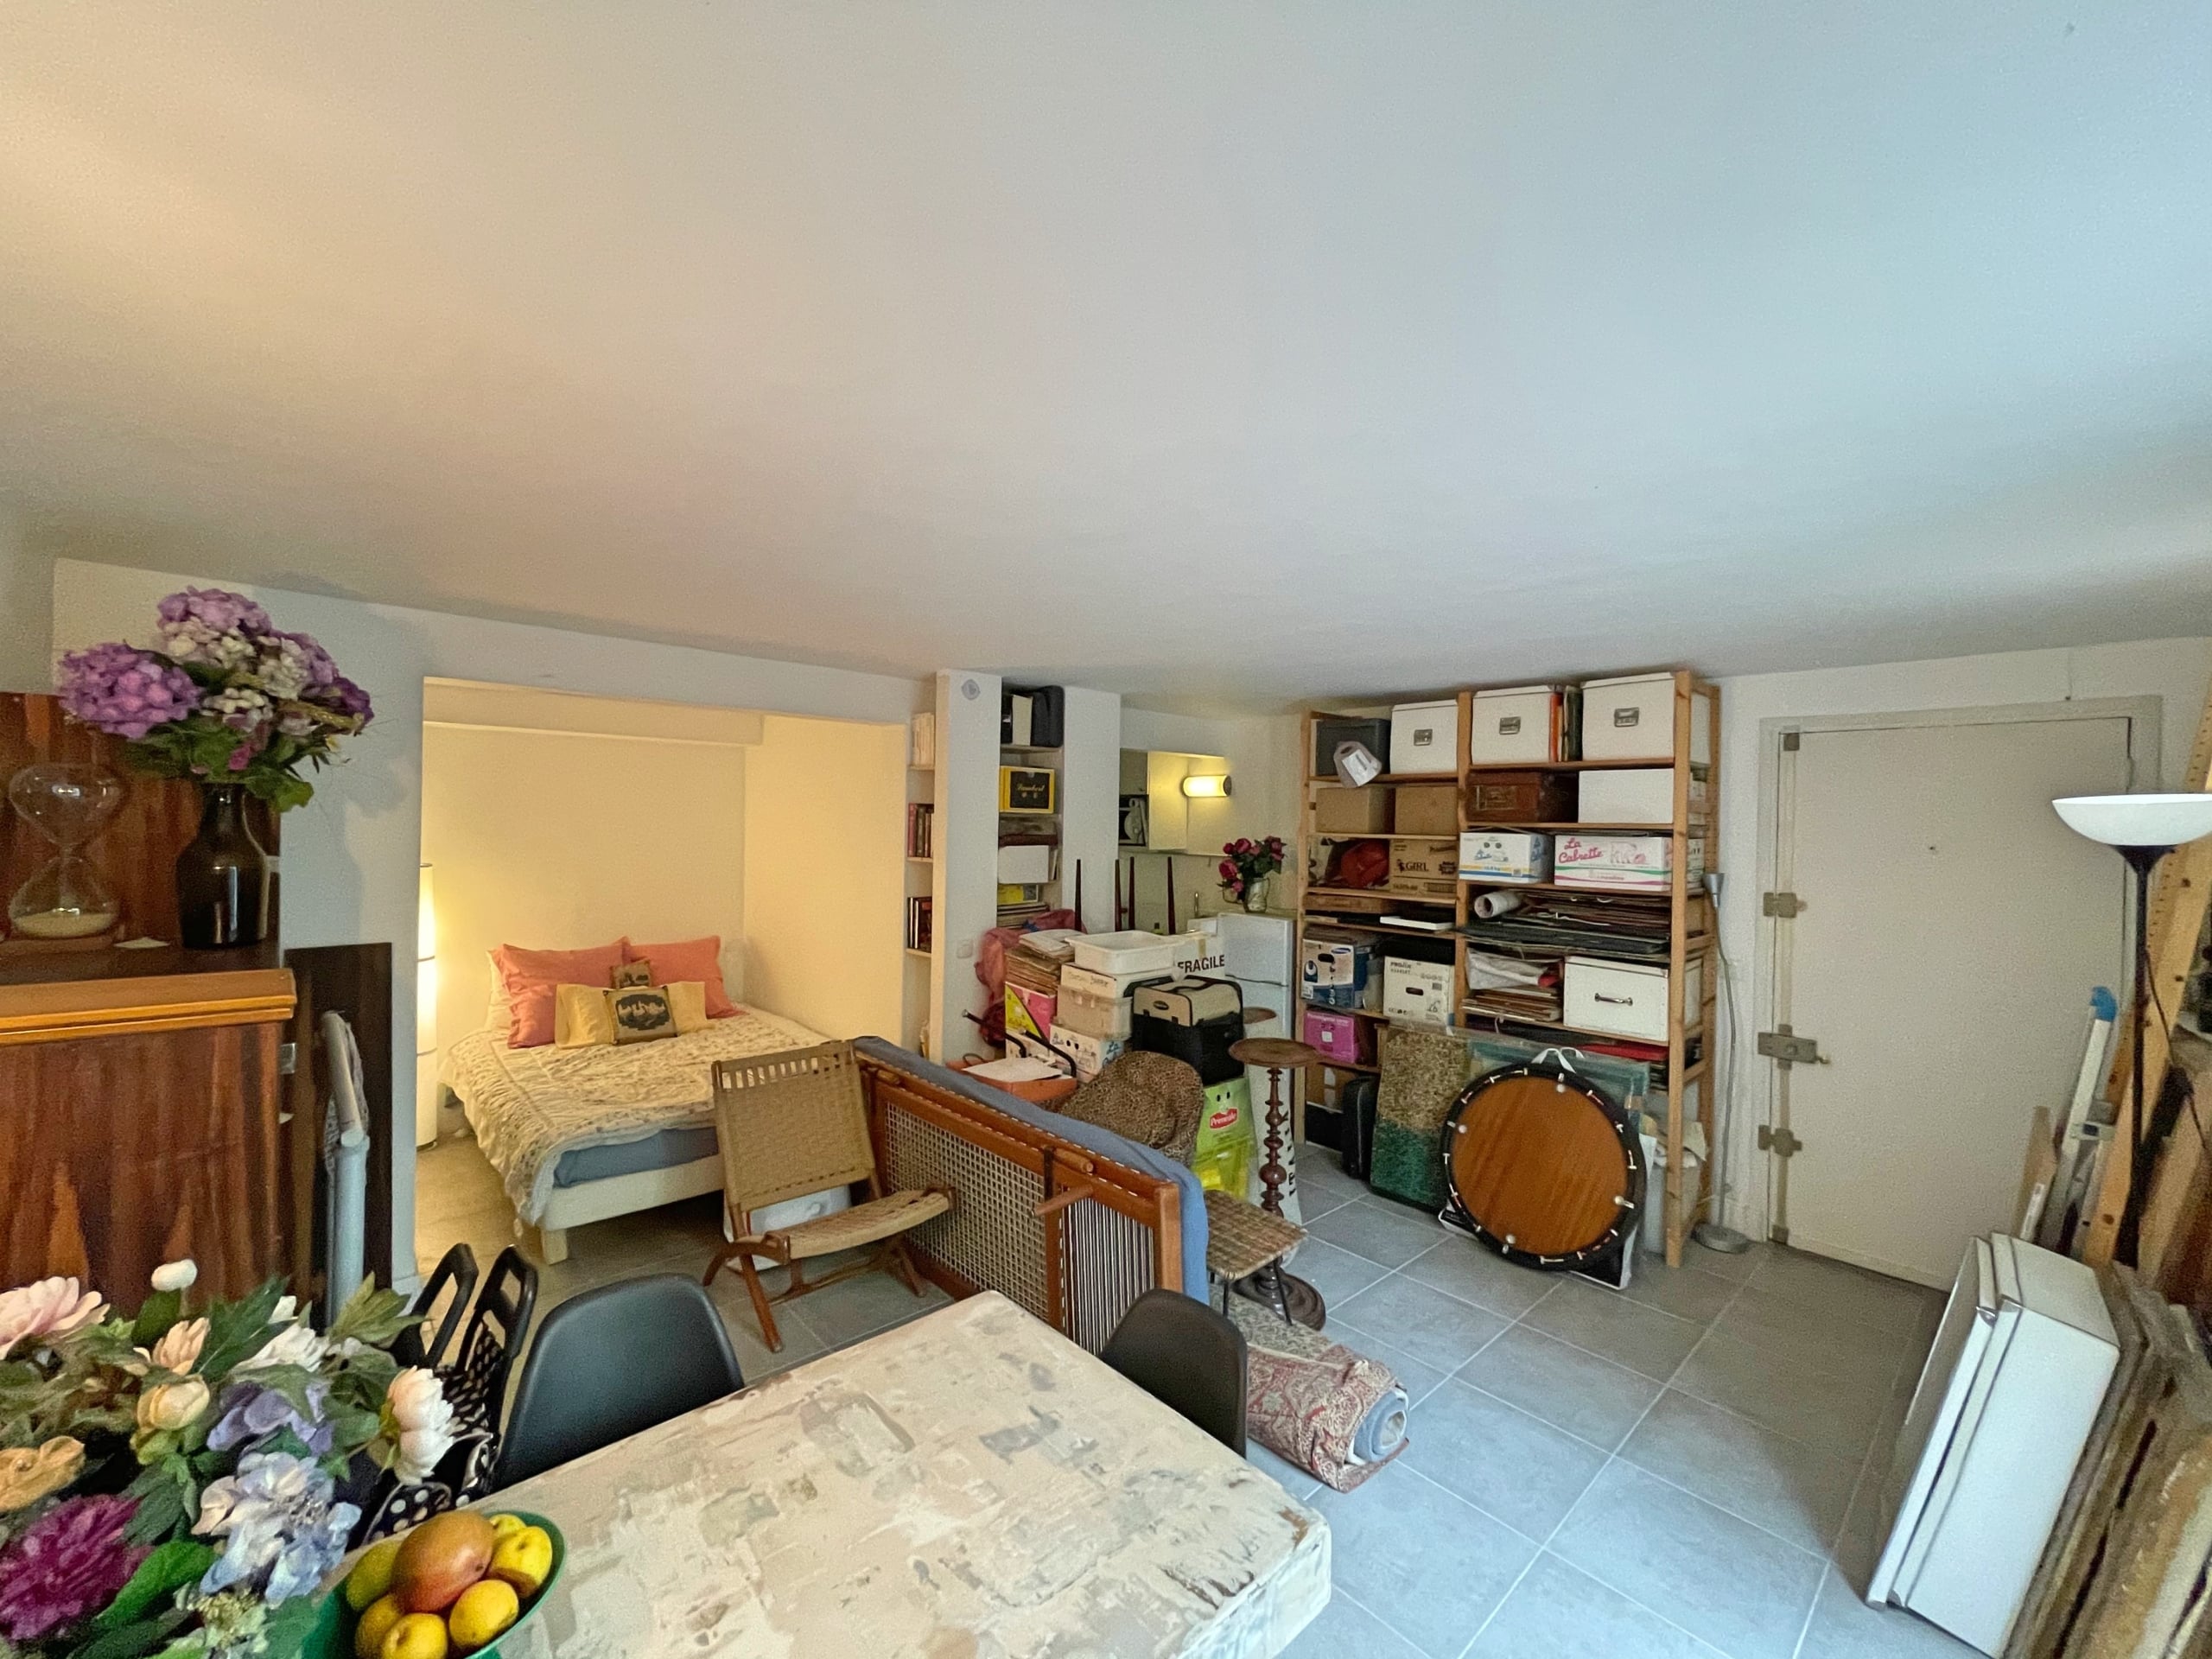 Appartement 80m² avec jardin – Viager Occupé Paris 4èmeges